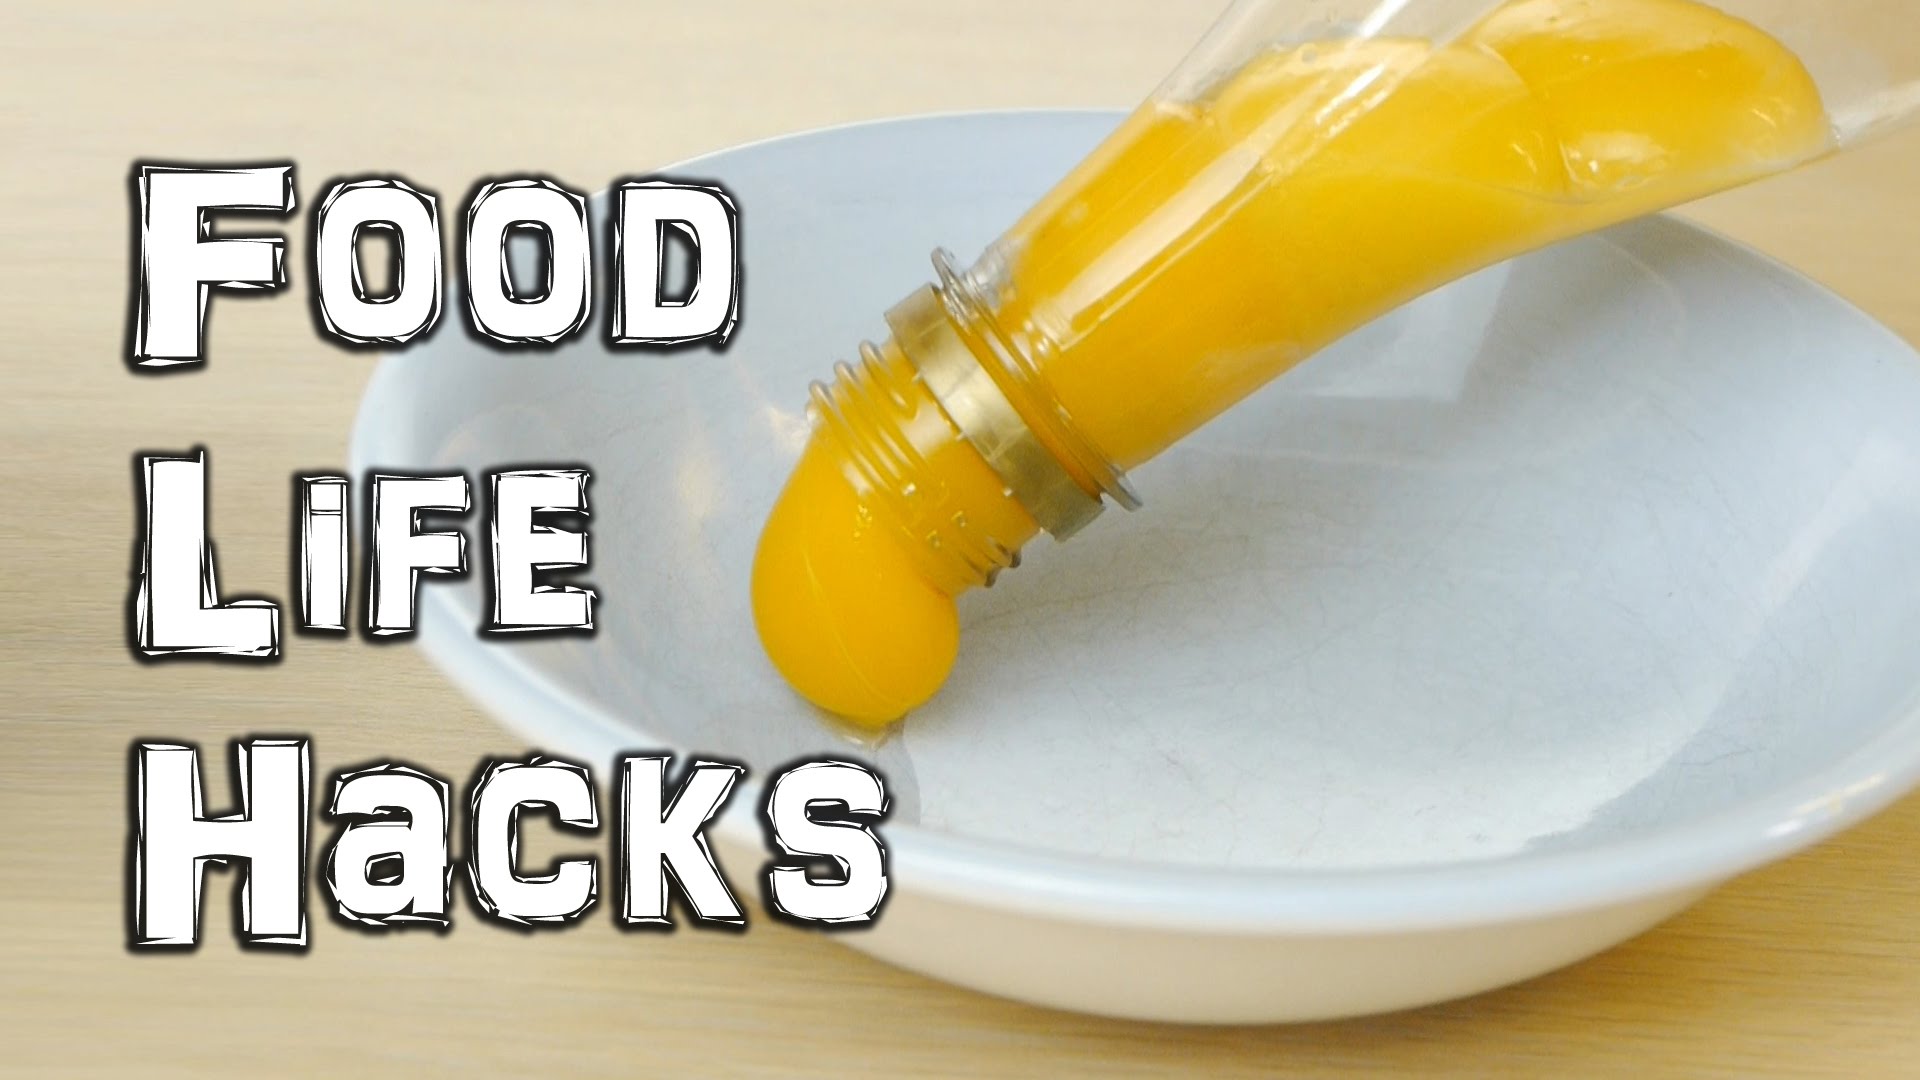 Food Life  Hacks  To Make Kitchen  Tasks Easier Fiercefork